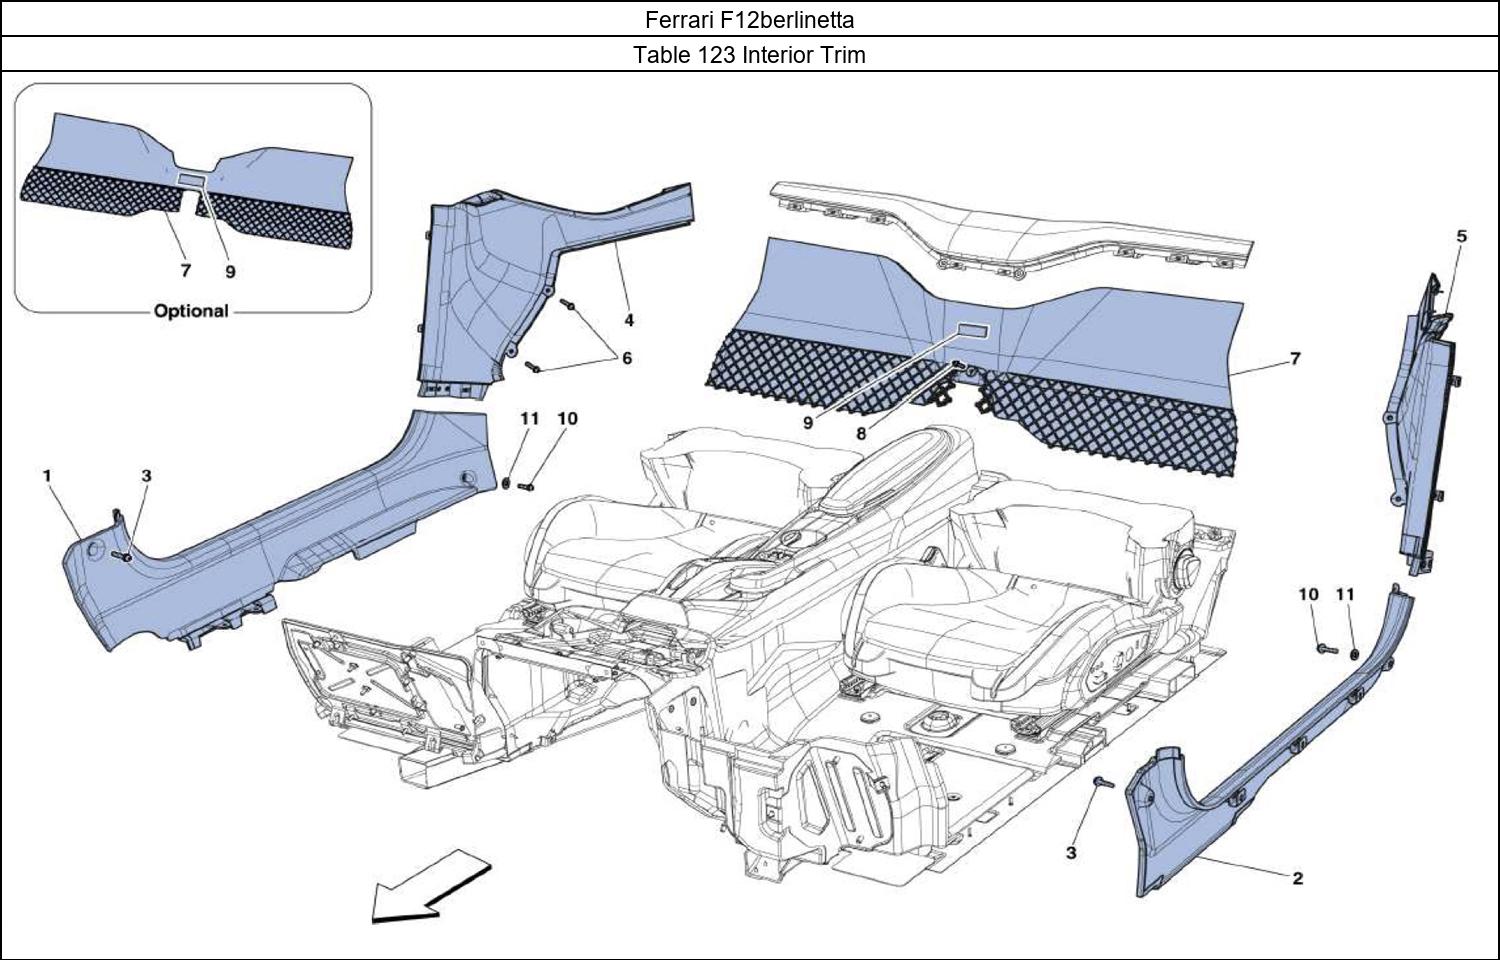 Ferrari Parts Ferrari F12berlinetta Table 123 Interior Trim